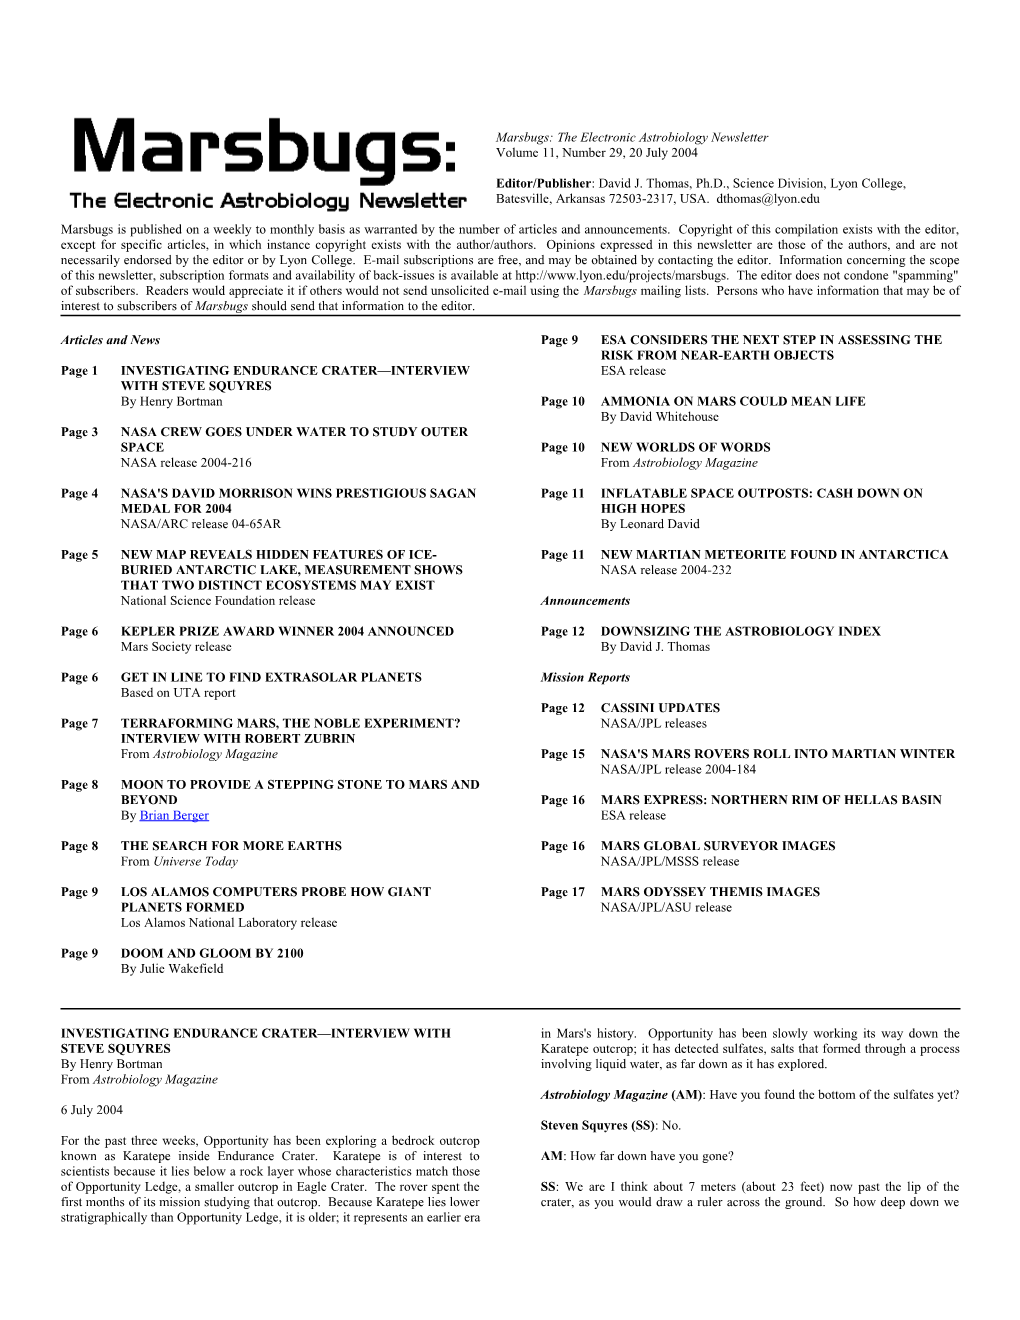 Marsbugs Vol. 11, No. 29